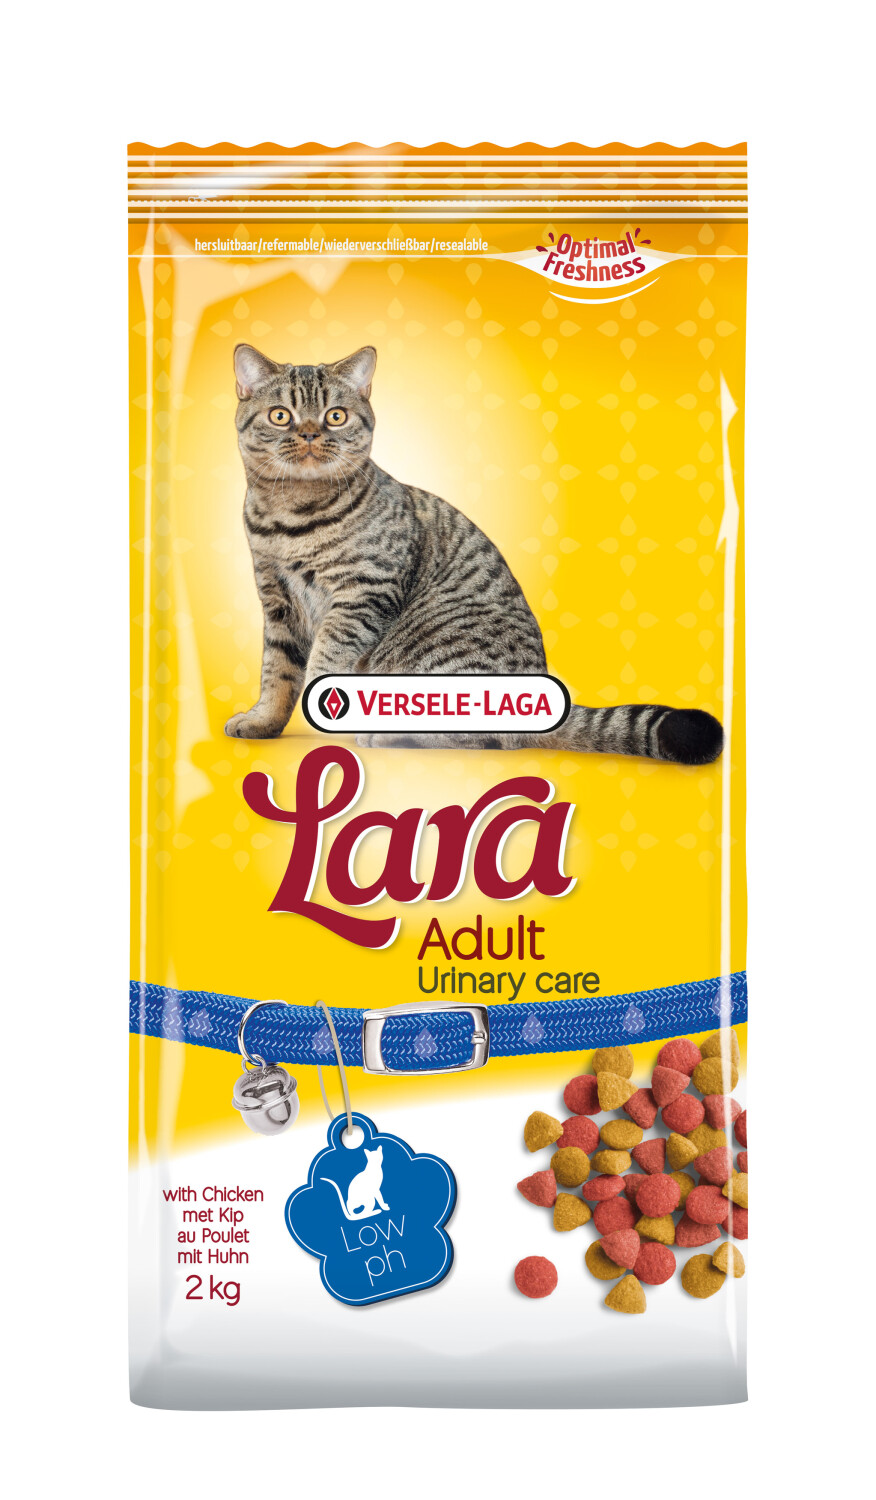 Afbeelding Versele-Laga Lara Adult Urinary Care kattenvoer 2 kg door Tuinadvies.be